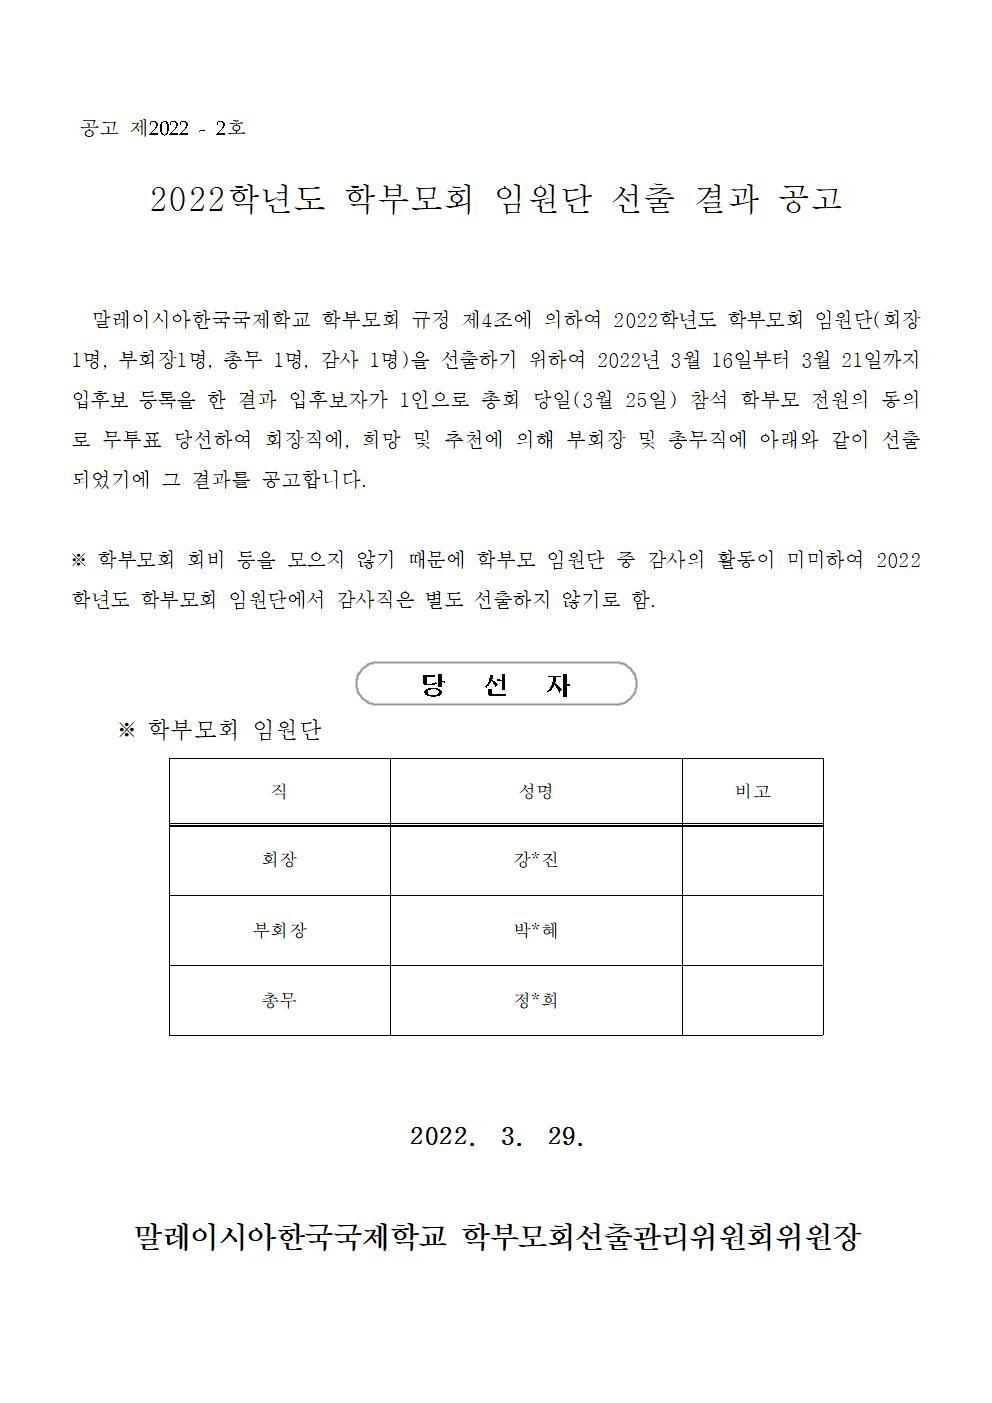 (2022.3.28) 2022.학부모회 임원단선출결과 공고_홈페이지용001.jpg